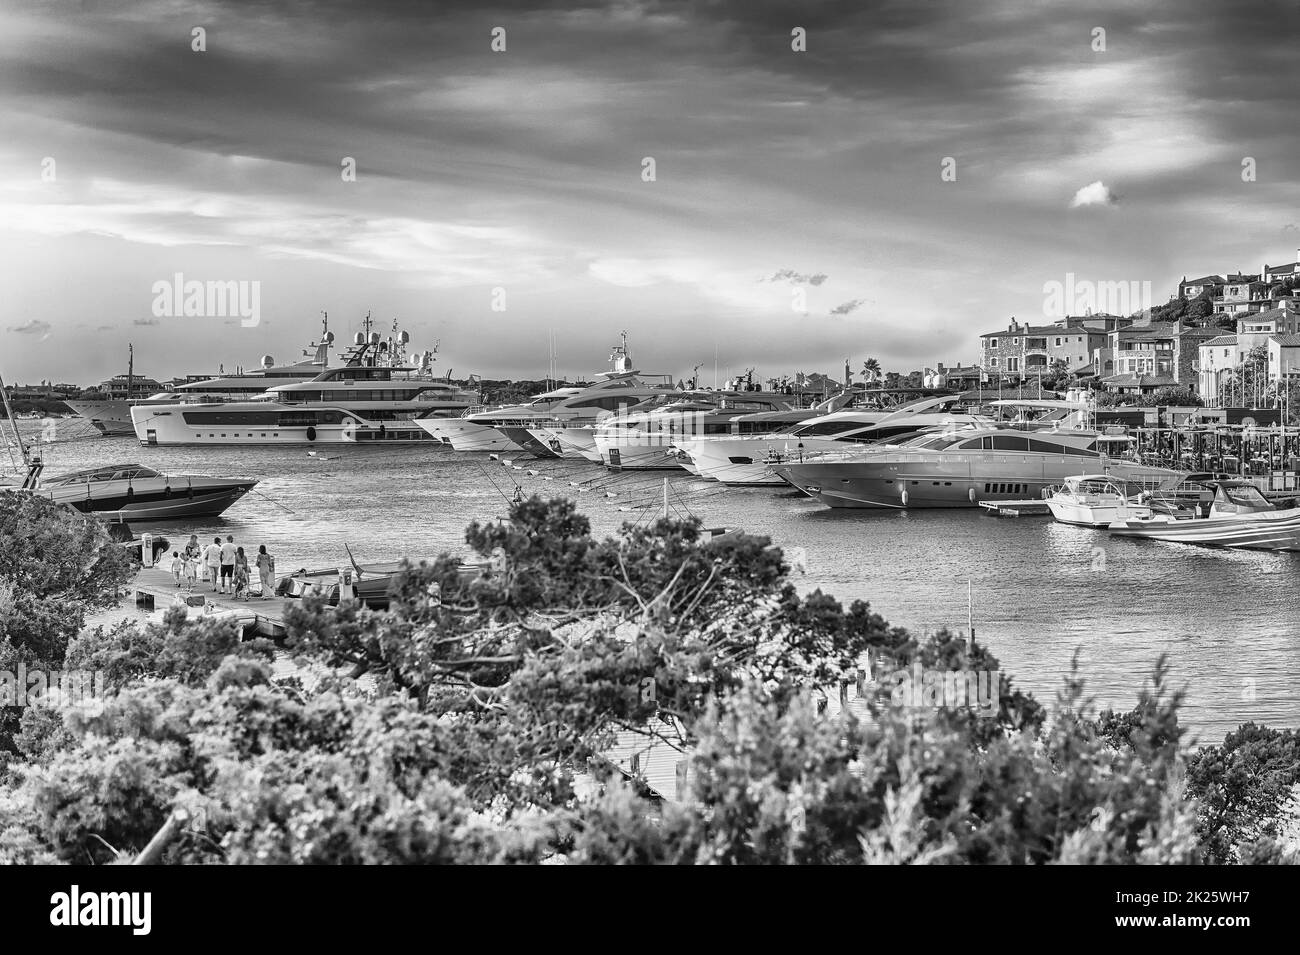 Hafen von Porto Cervo, im Herzen der Costa Smeralda, Sardinien, Italien Stockfoto